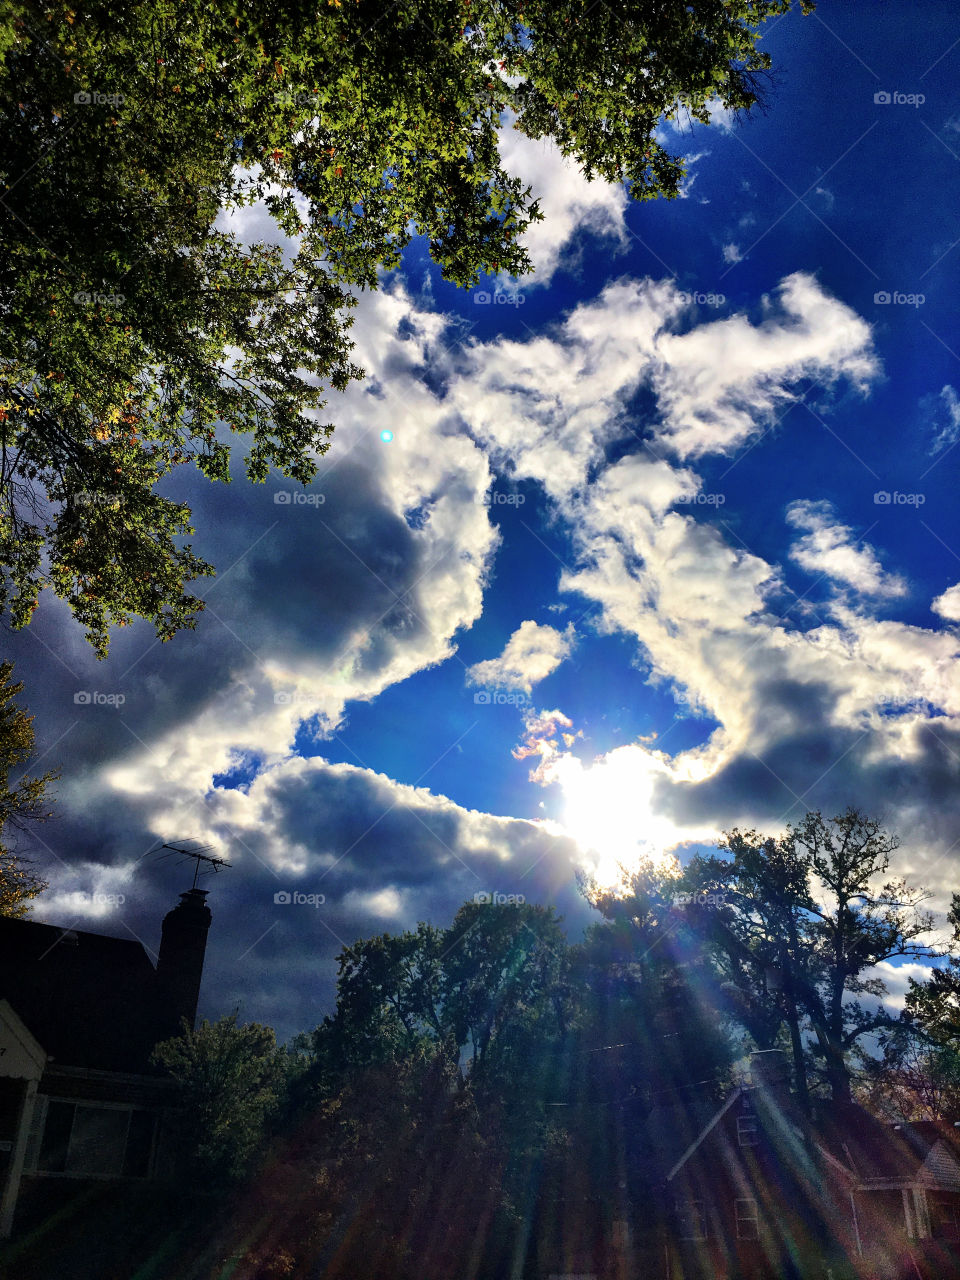 Sun, clouds, fall